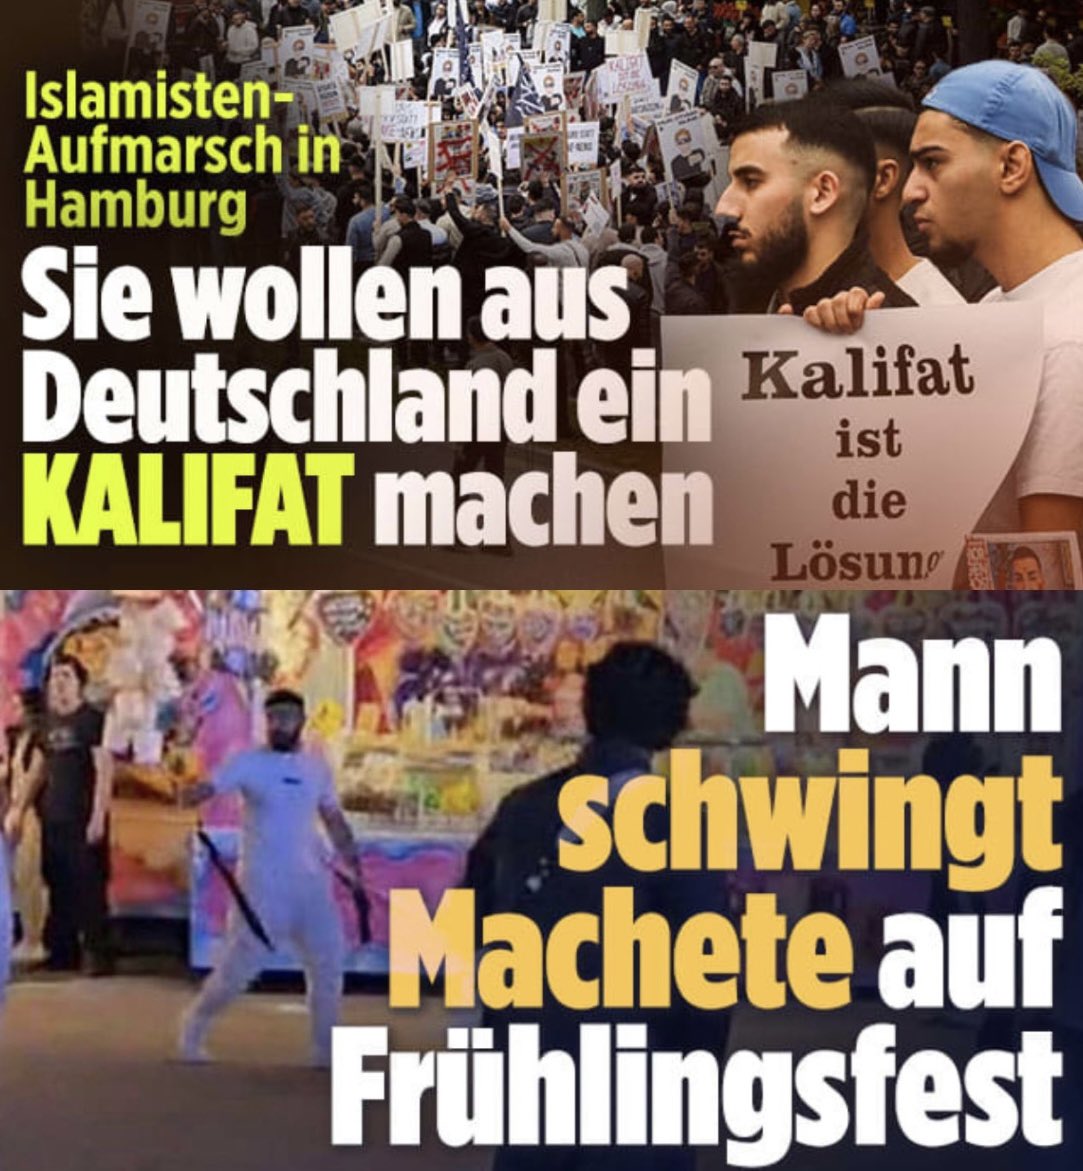 In Talkshows wird ja gerne angeführt, dass die angebliche Ausländerfeindlichkeit in Deutschland, die Stimmen für die AfD etc., dieses Land unattraktiv für Fachkräfte aus dem Ausland machen würde. Ich glaube ja eher, dass Bilder von demonstrierenden Islamisten und…